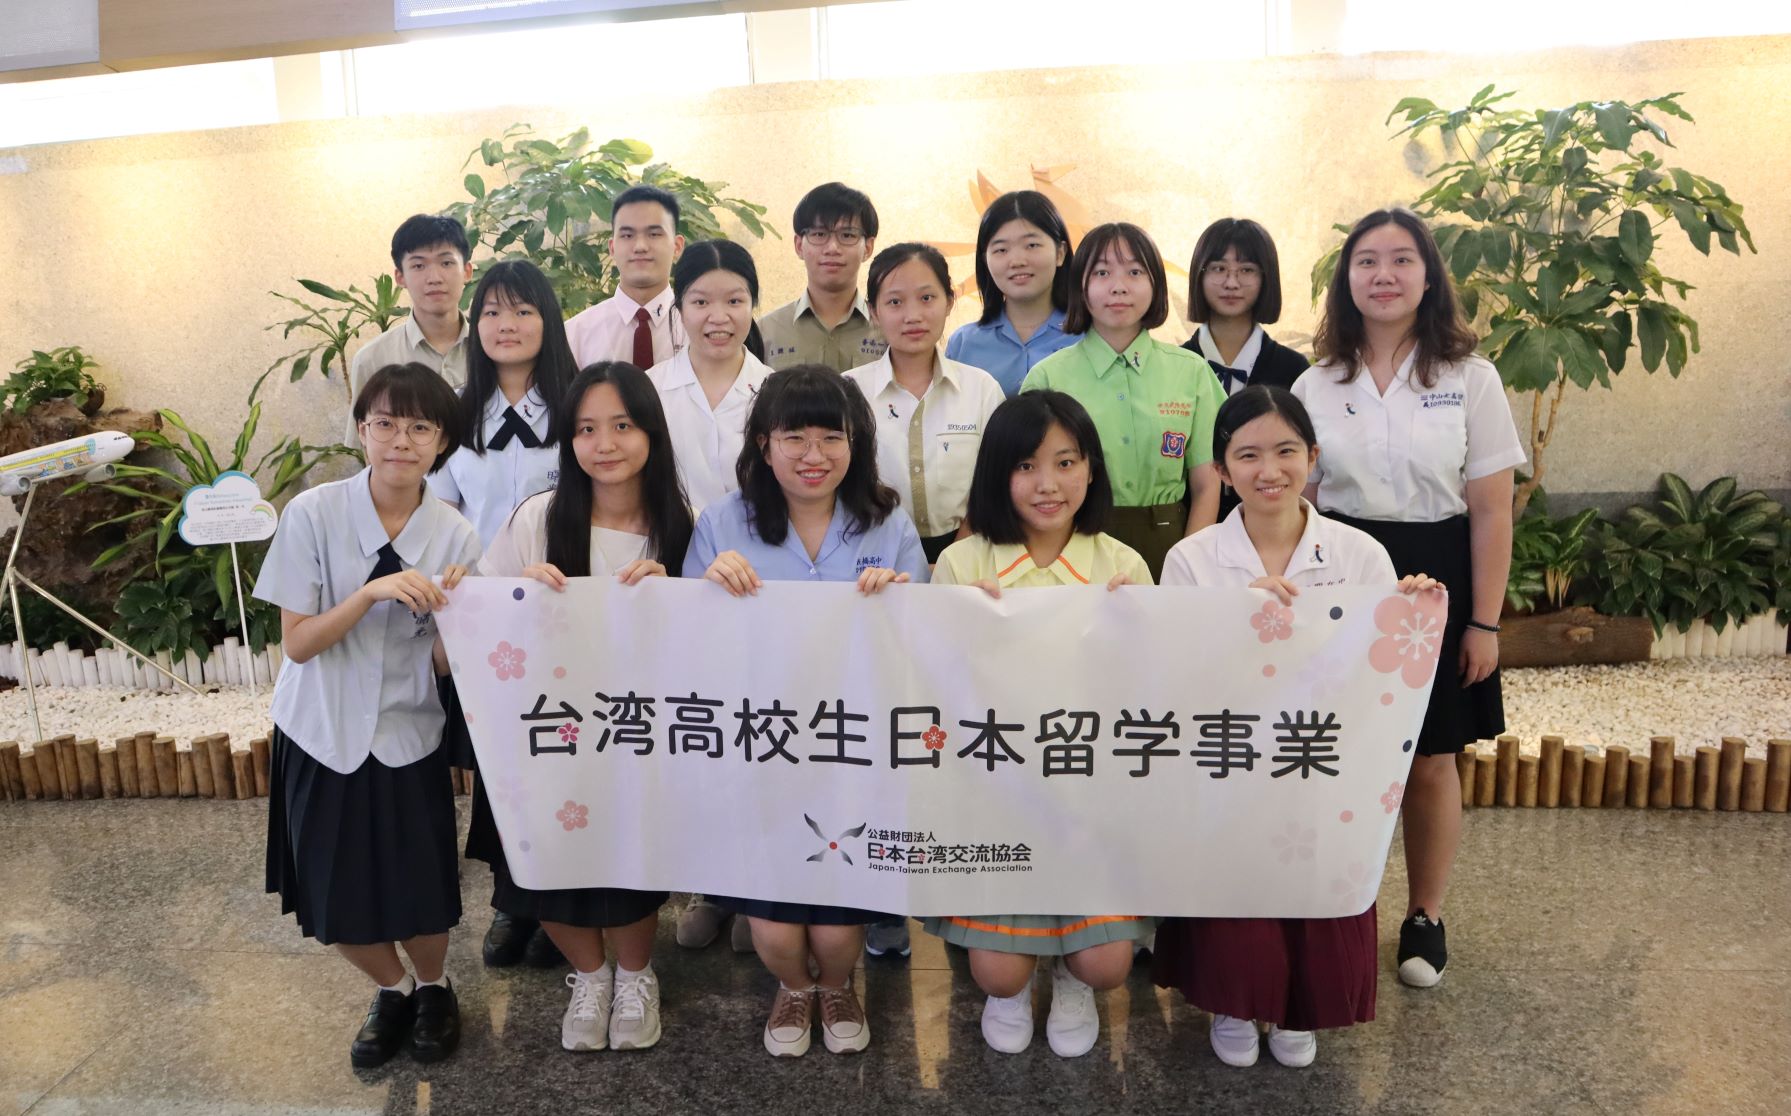 台湾高校生日本留学事業第６期生の来日研修を実施しました